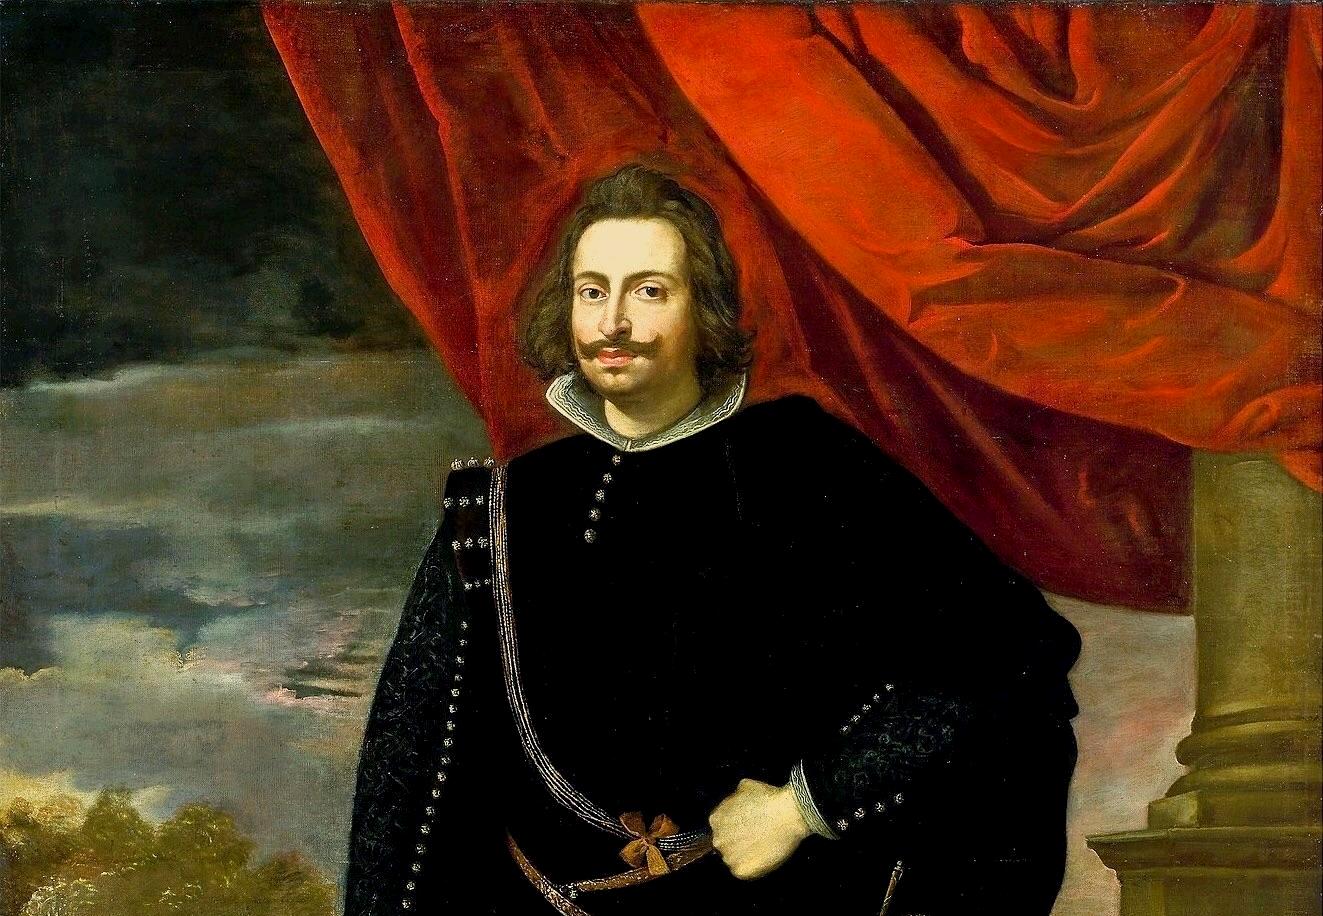 D. João IV